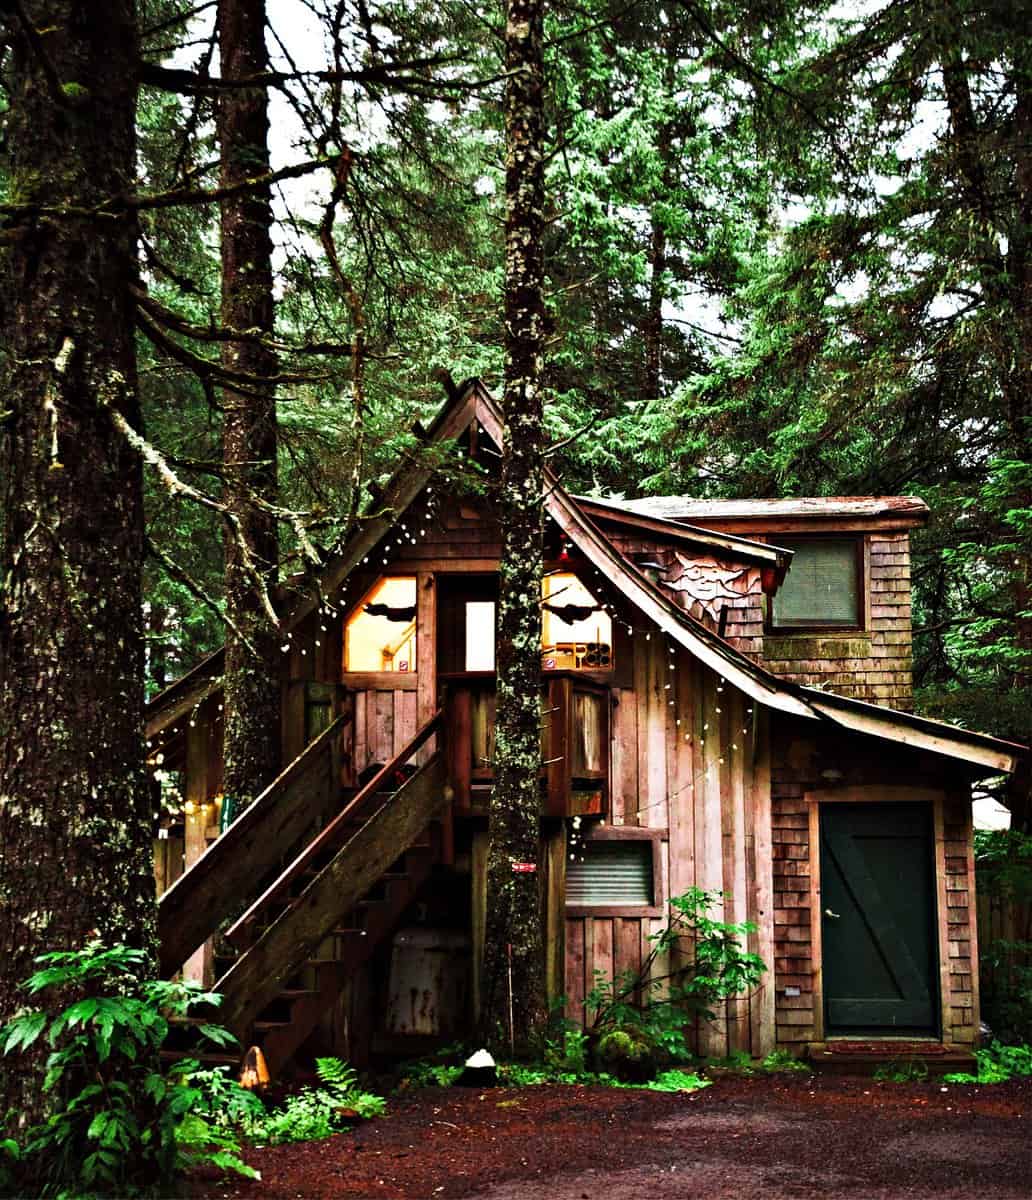 A warm cozy cabin in the rain forest of Alaska near Seward